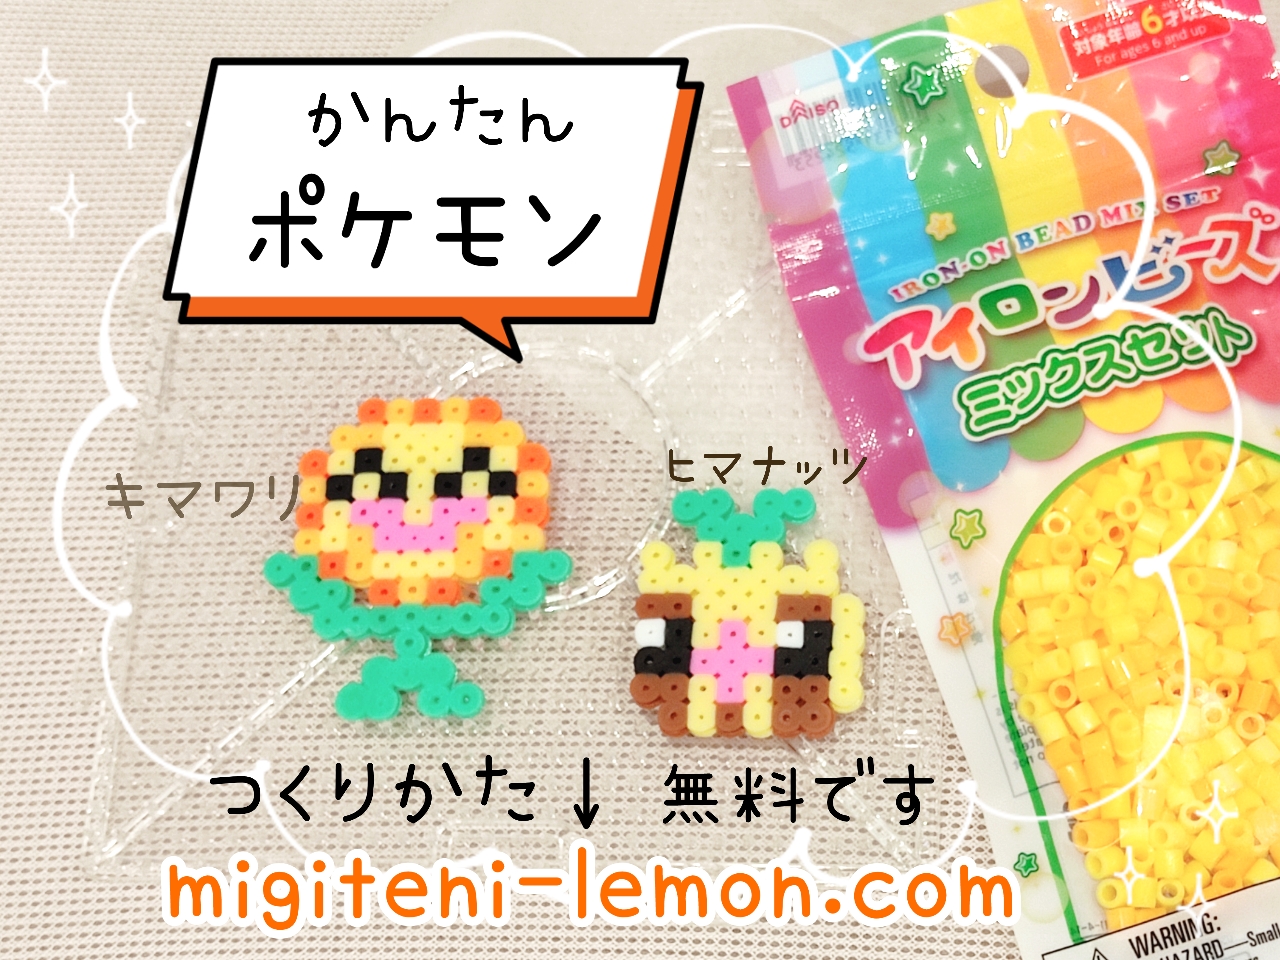 himanuts-sunkern-kimawari-sunflora-pokemon-kawaii-himawari-handmade-daiso-small-square-iron-beads-free-zuan-100kin